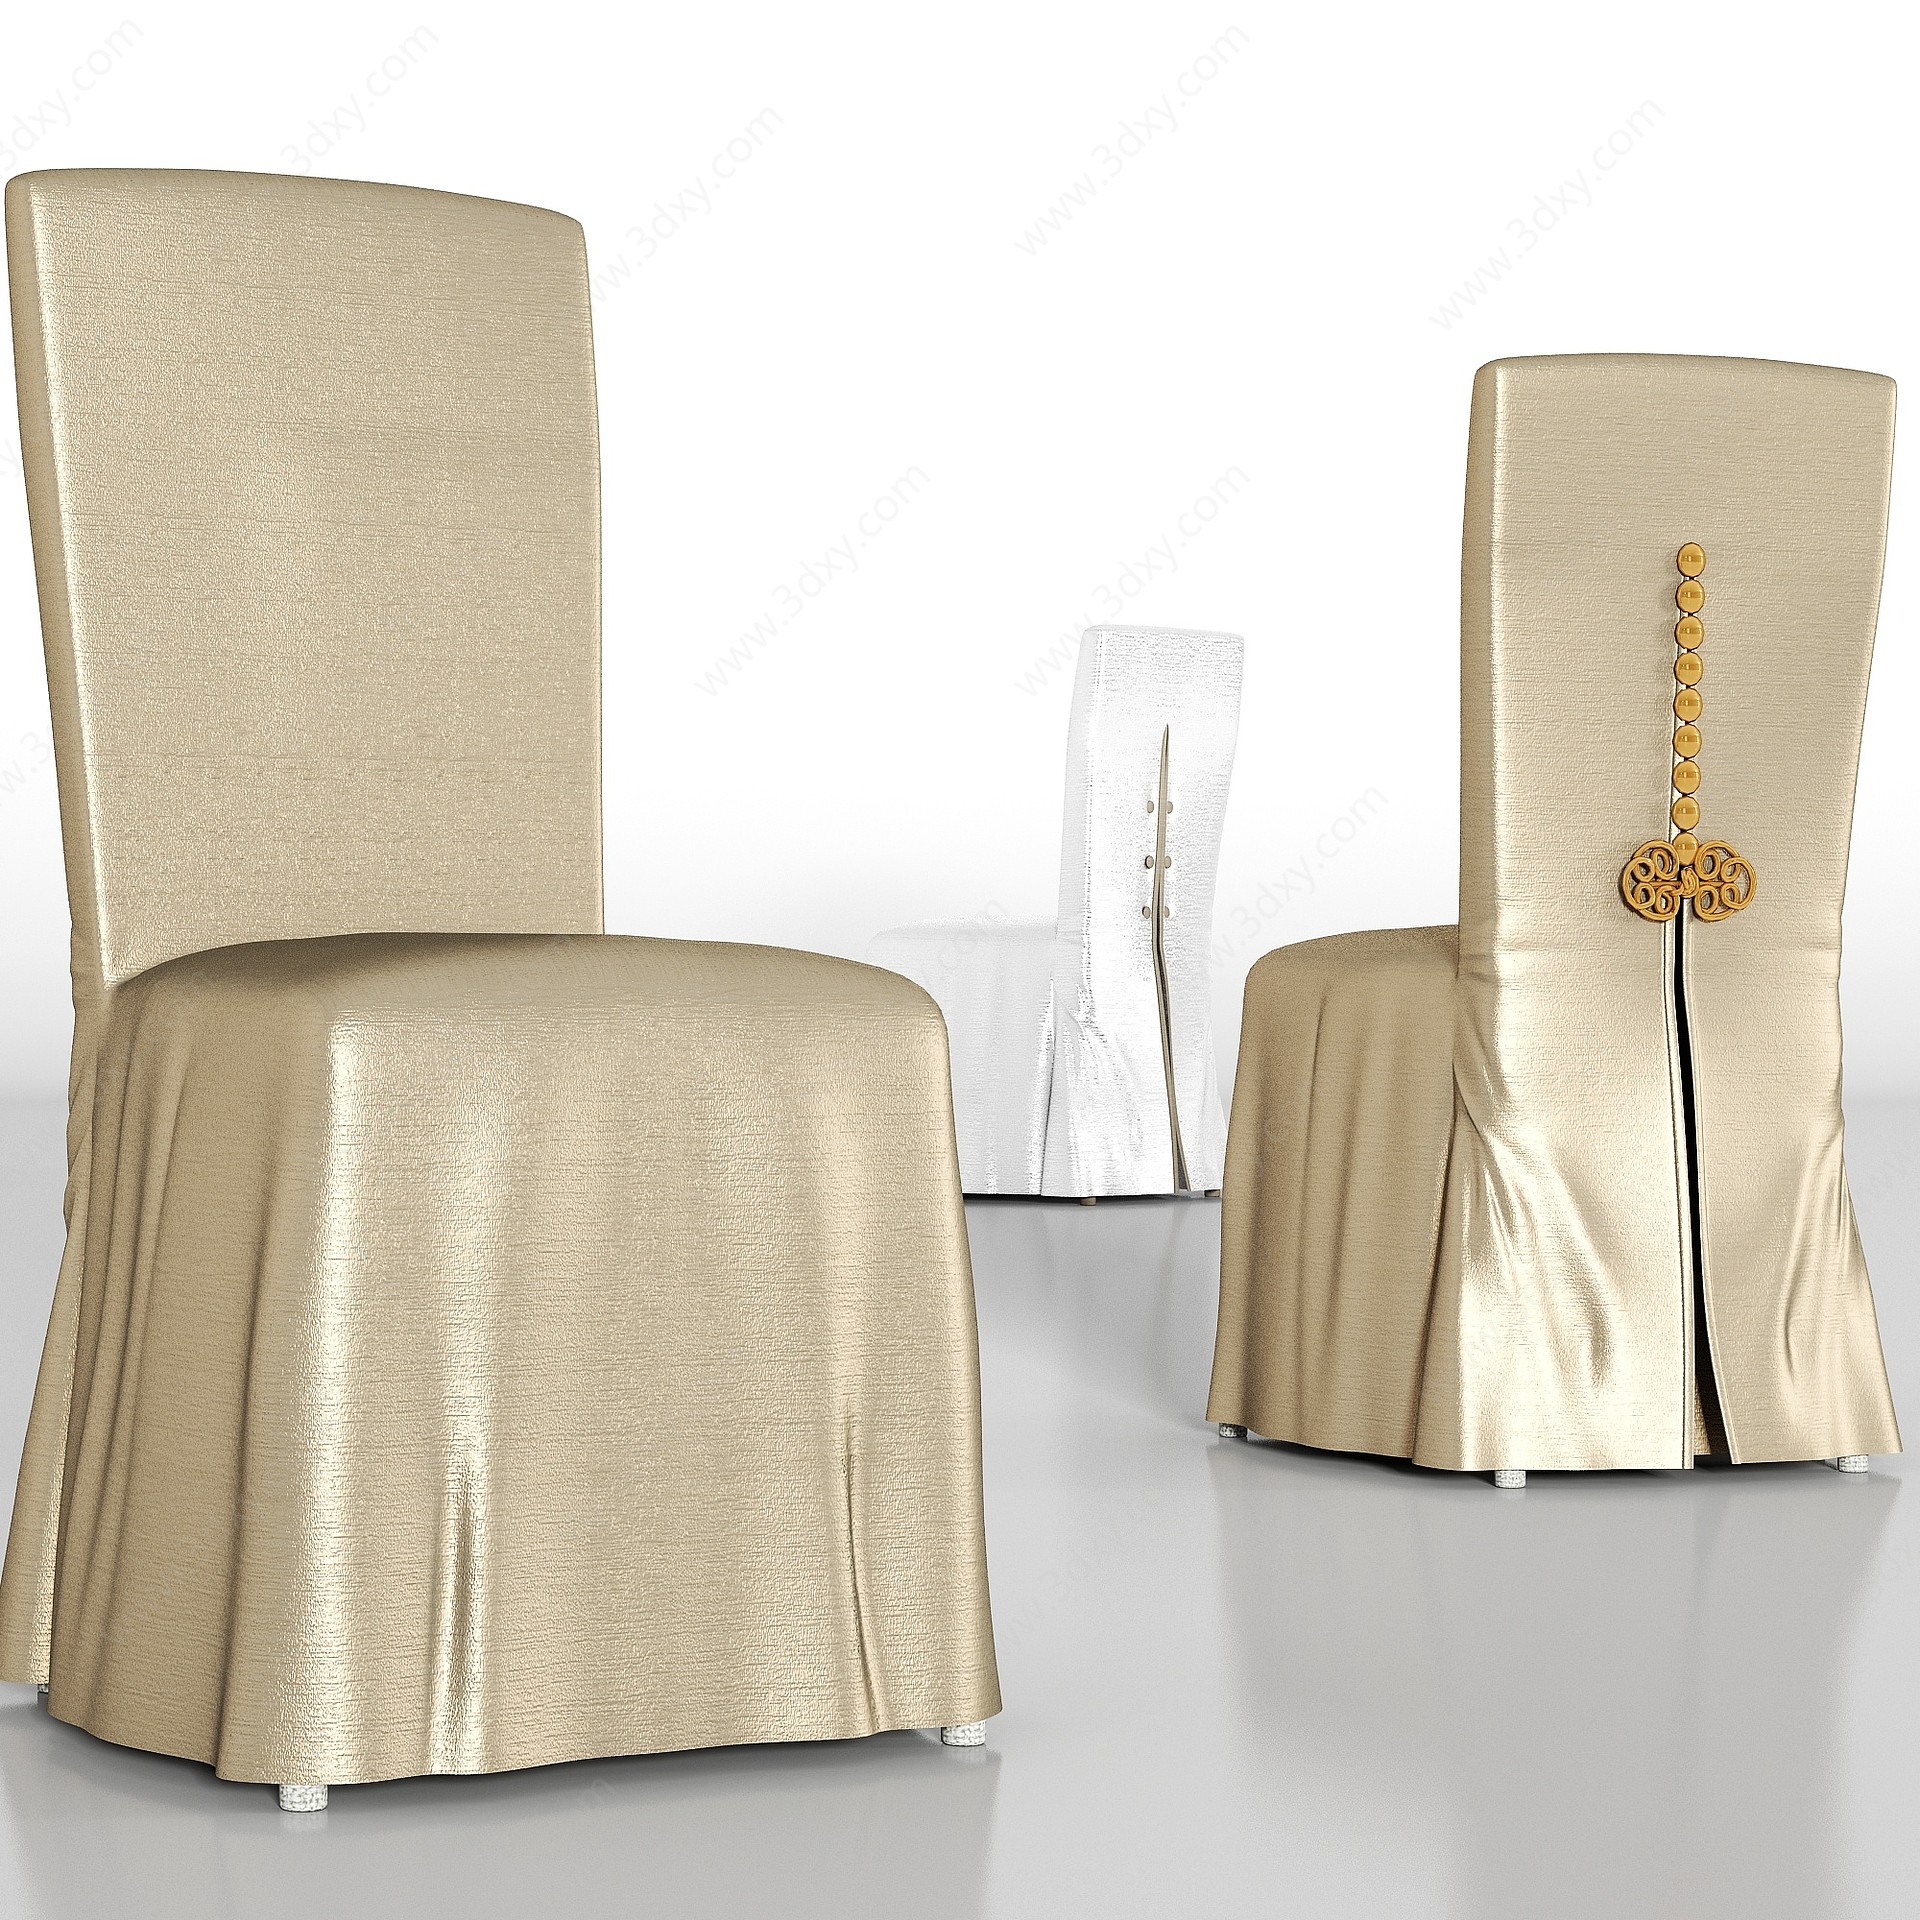 奢华丝绸宴会厅餐椅组合3D模型